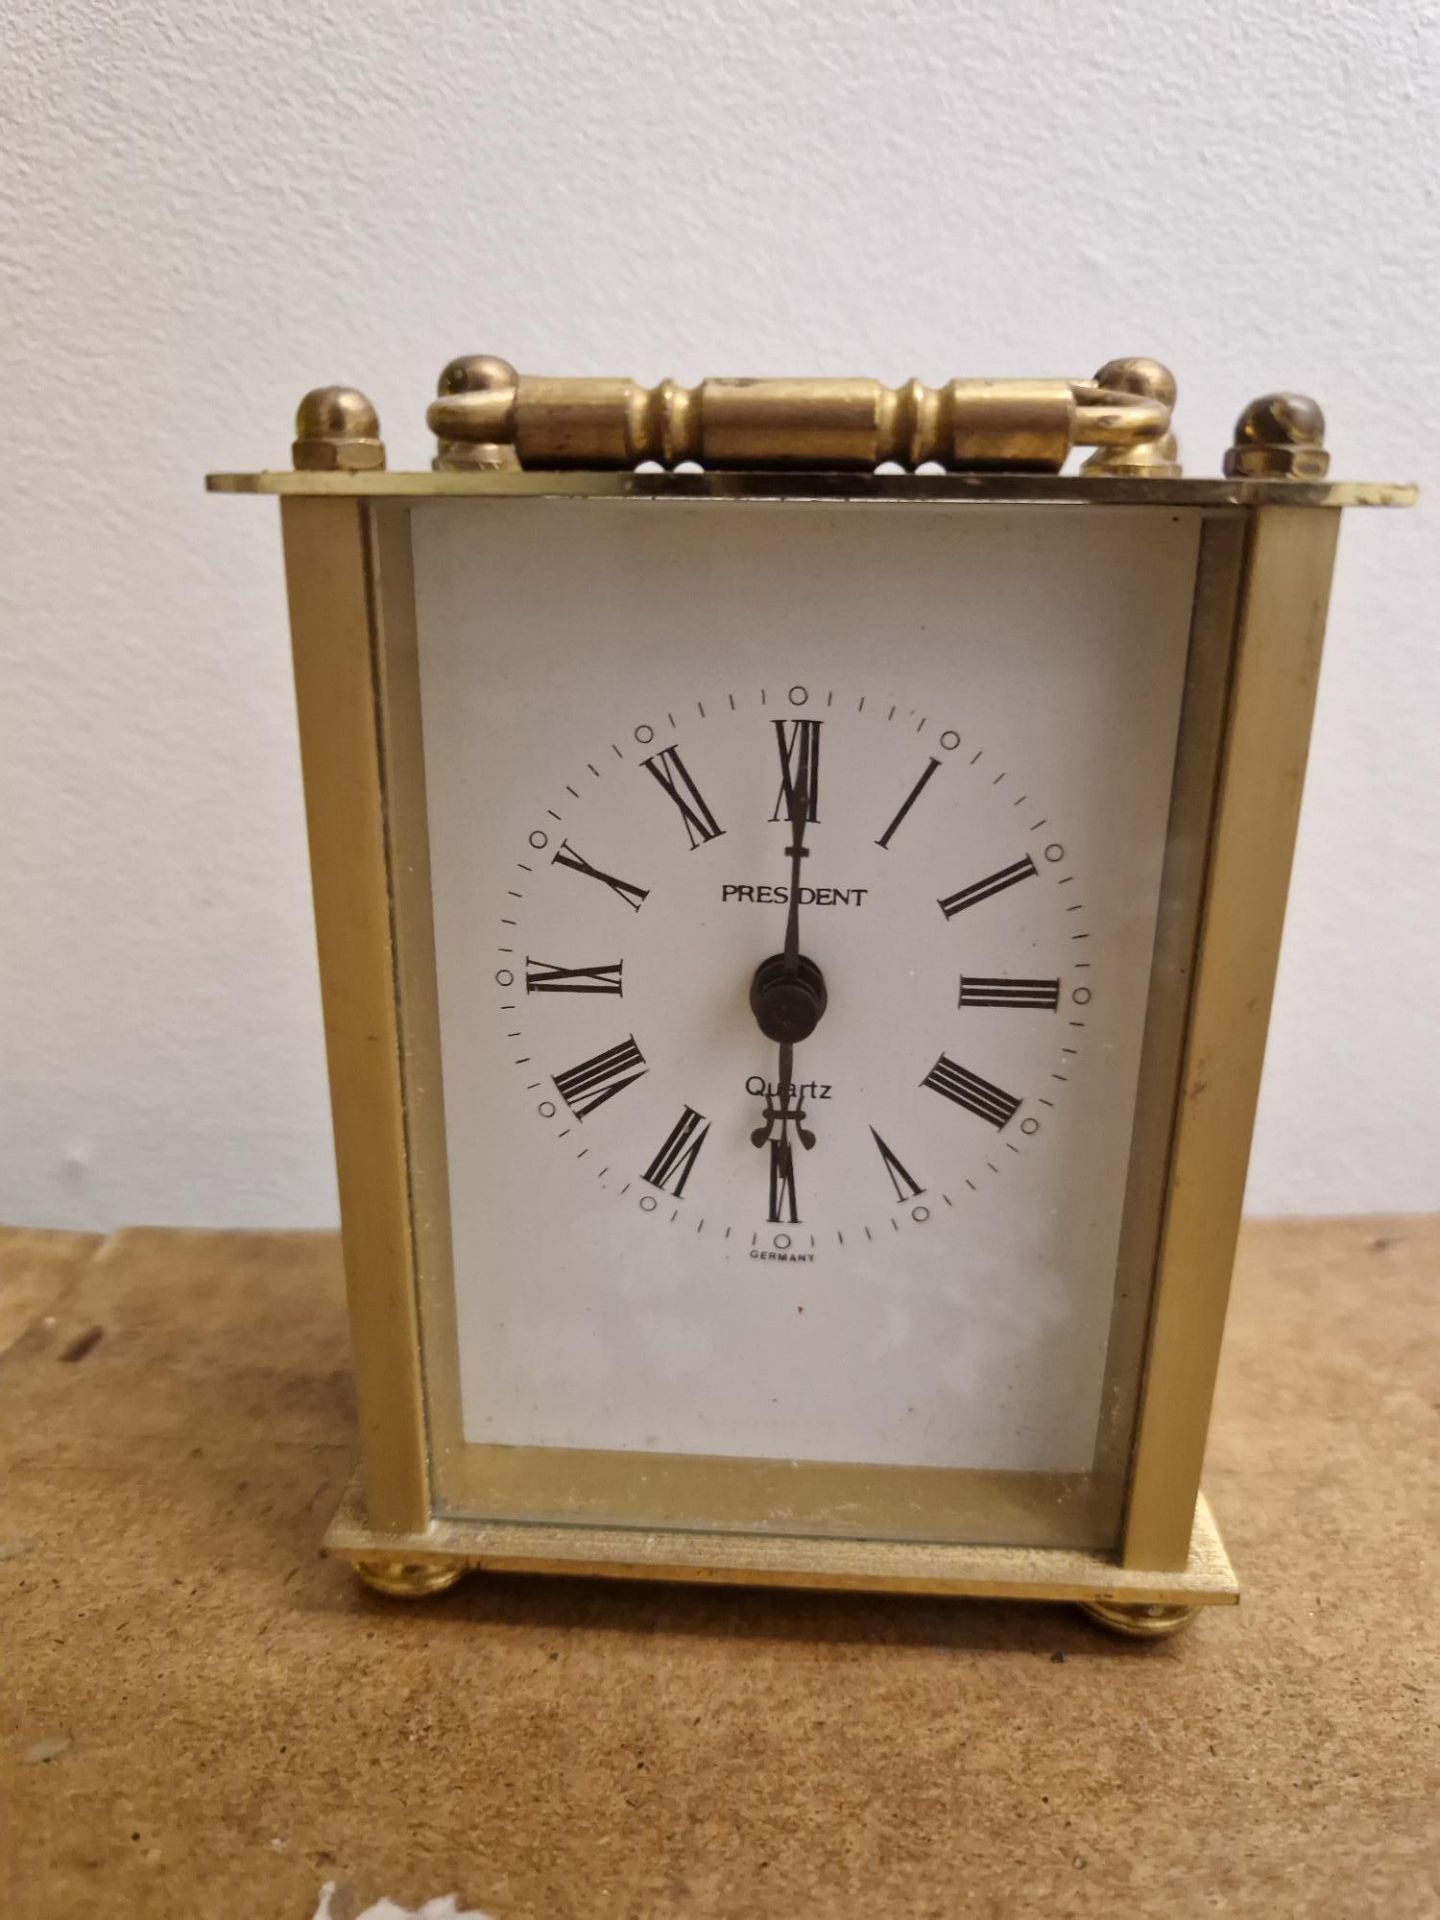 President quartz clock